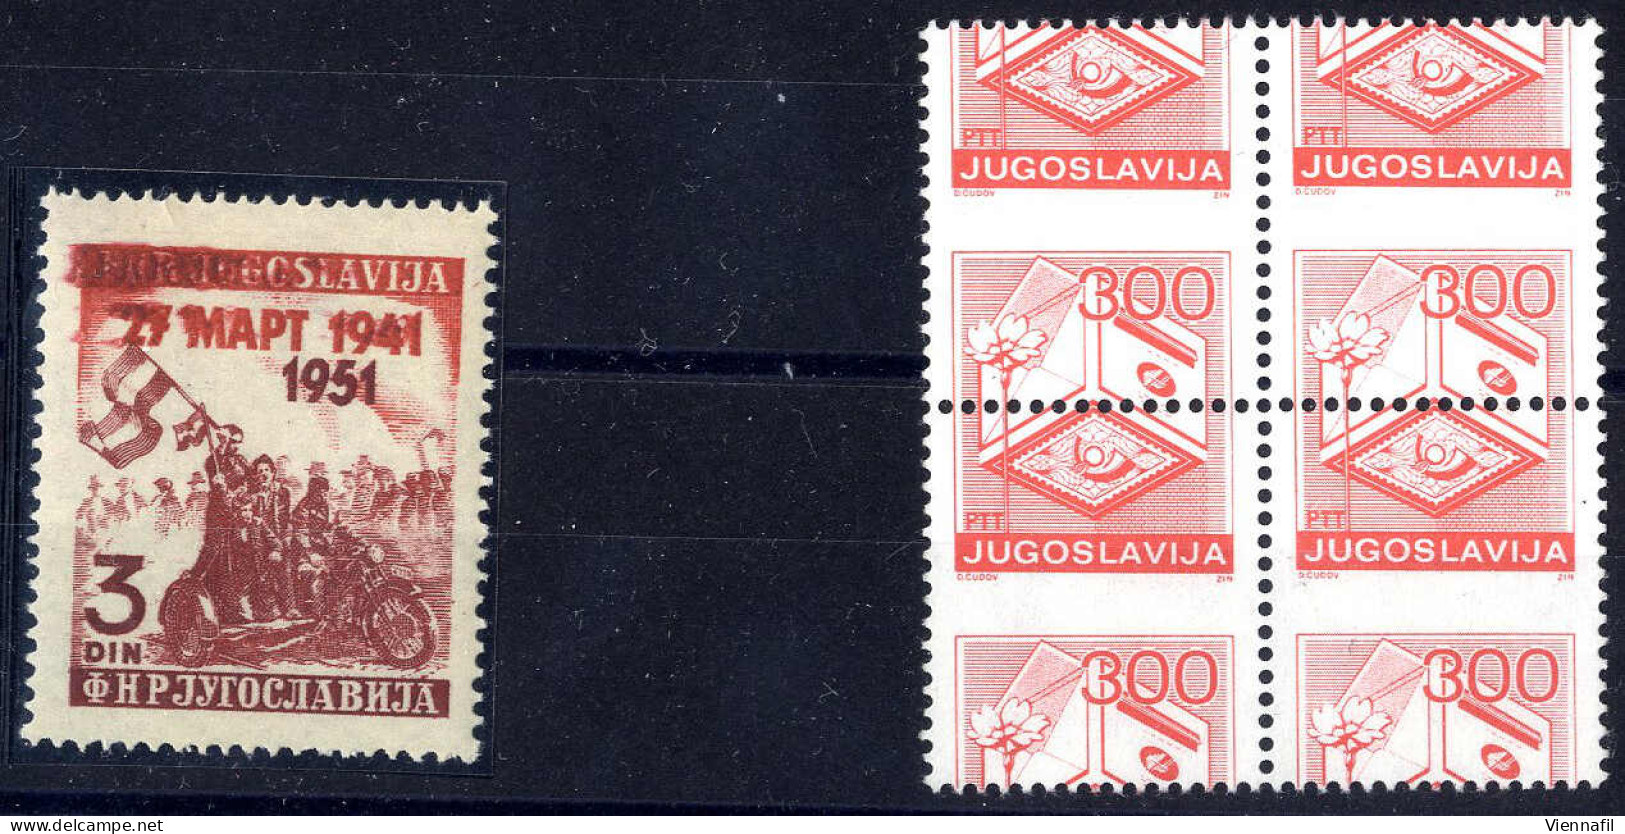 **/*/o Jugoslawien 1921/89, meist ungebrauchte und ein wenig gestempelte Sammlung auf Einsteckblättern, dabei auch Reich